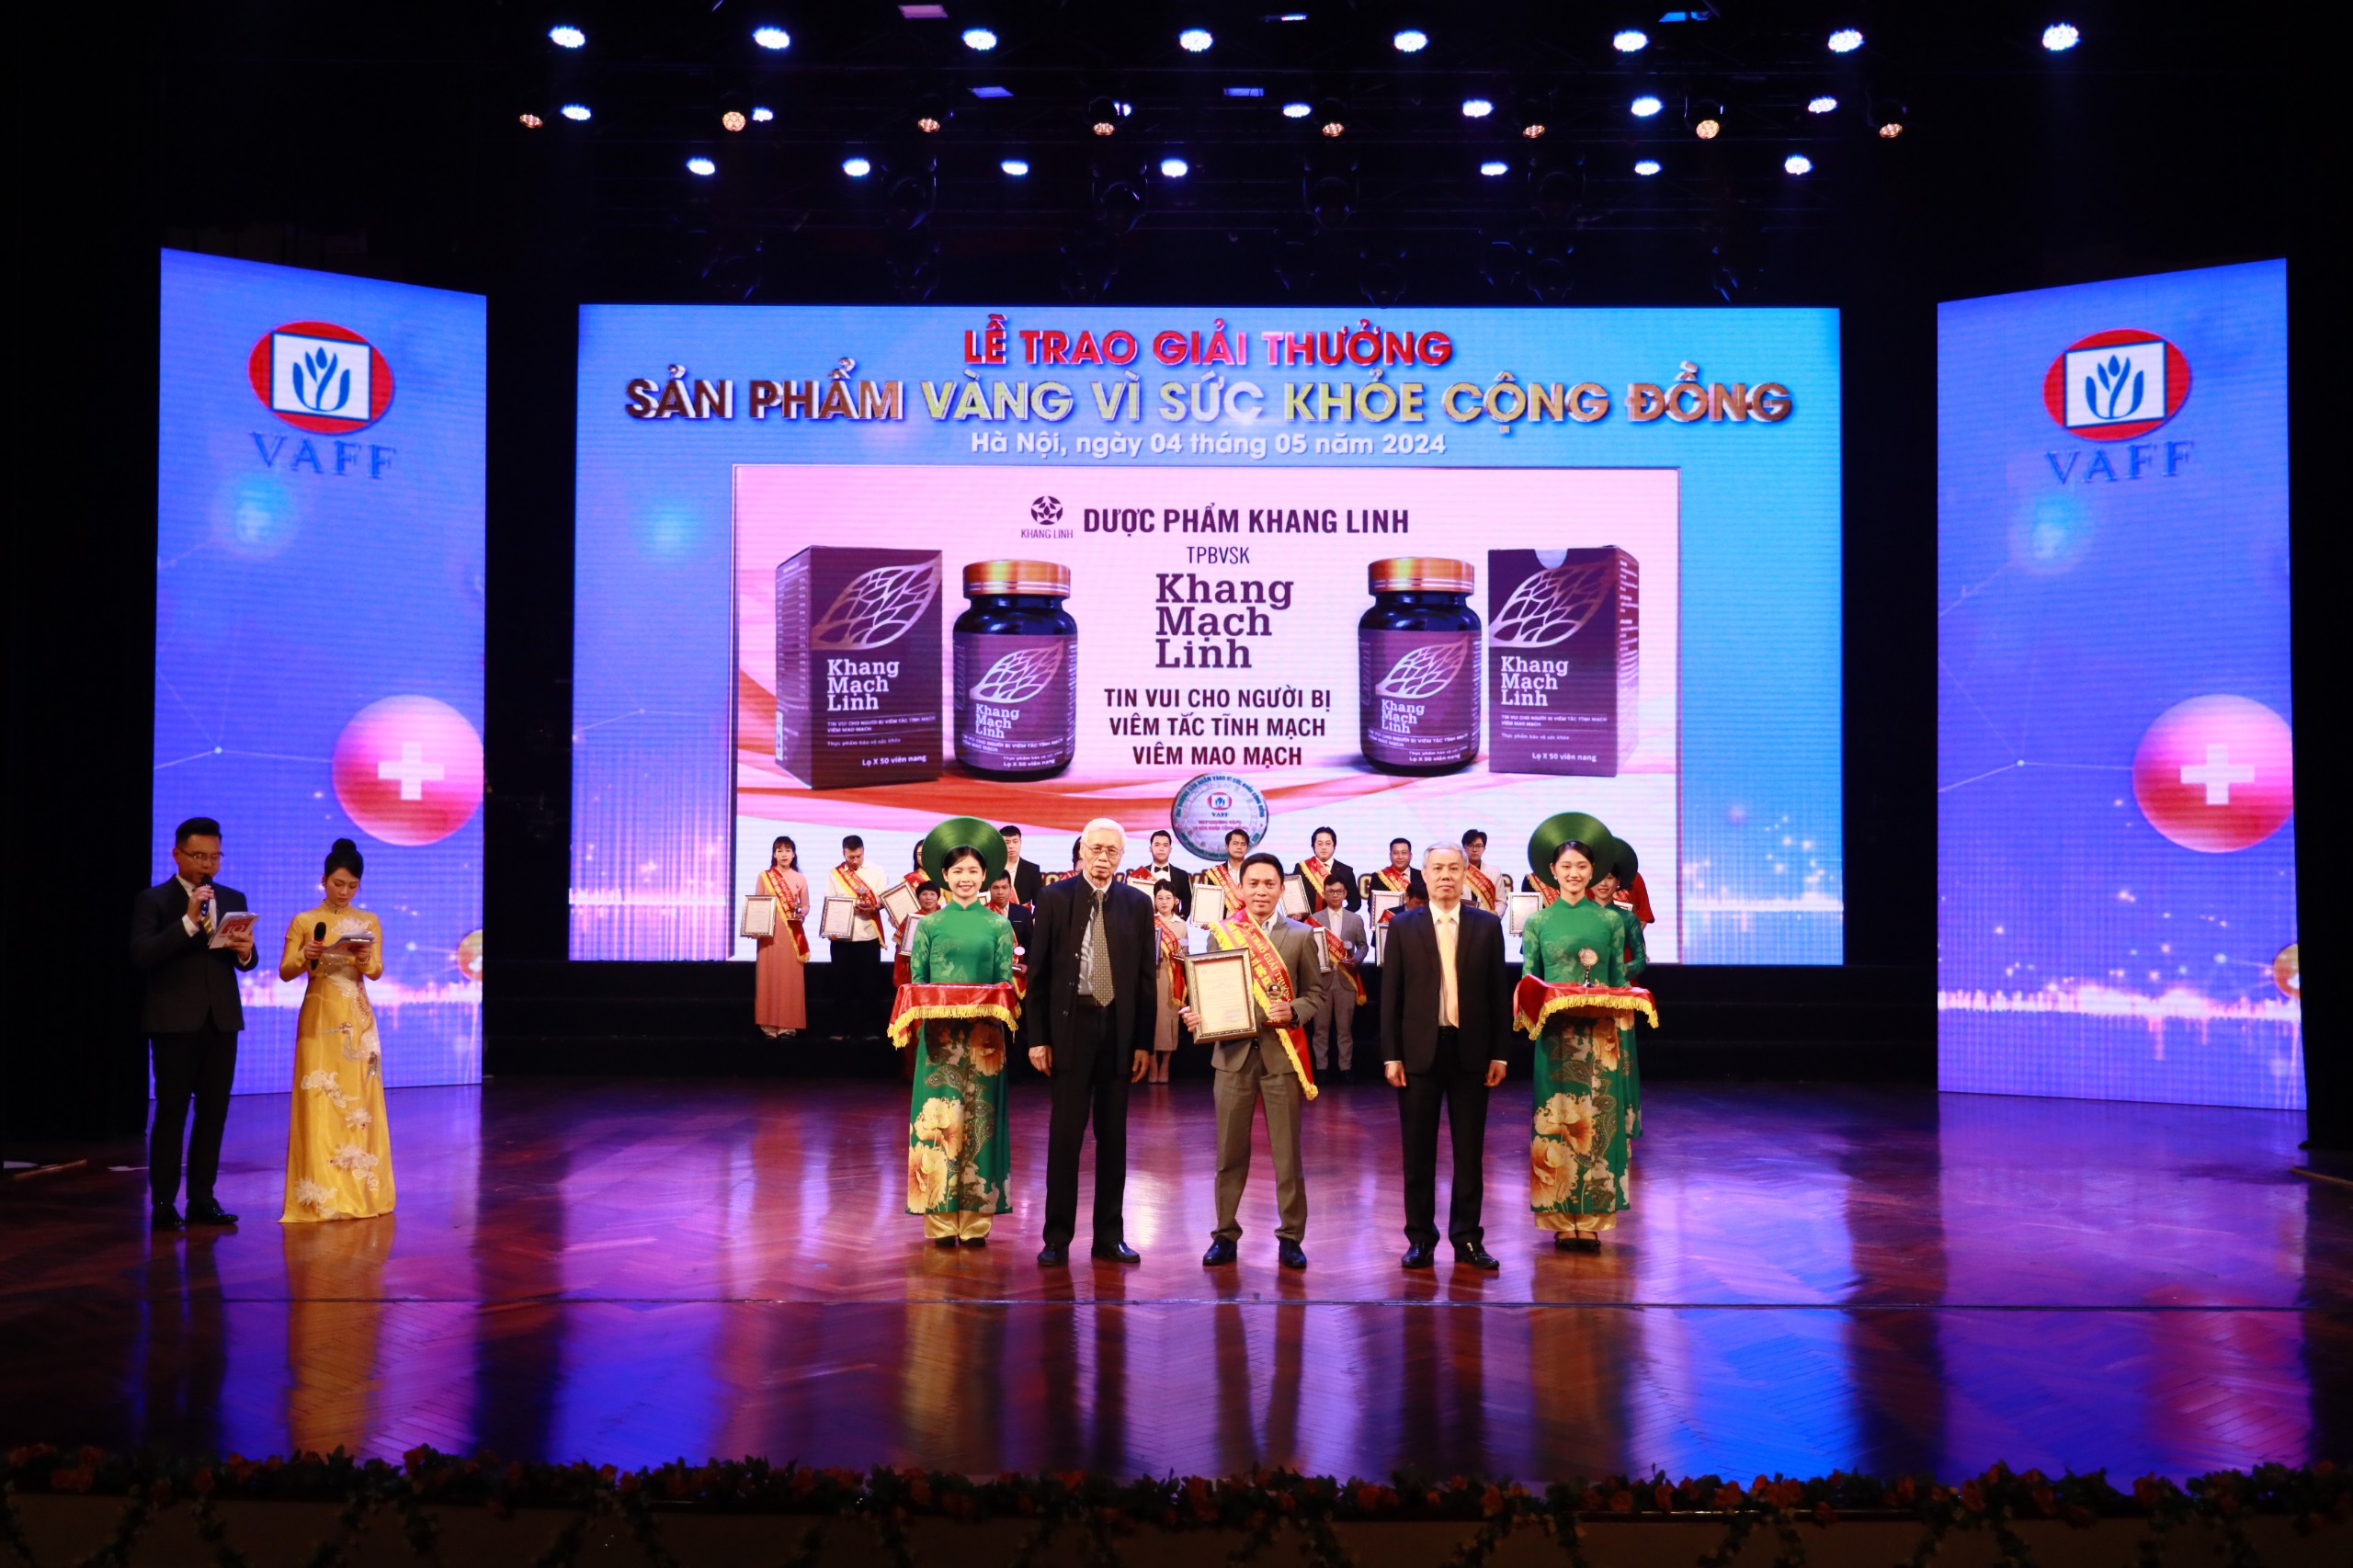 Dược phẩm Khang Linh nhận Huy chương Vàng “Sản phẩm vì sức khỏe cộng đồng”